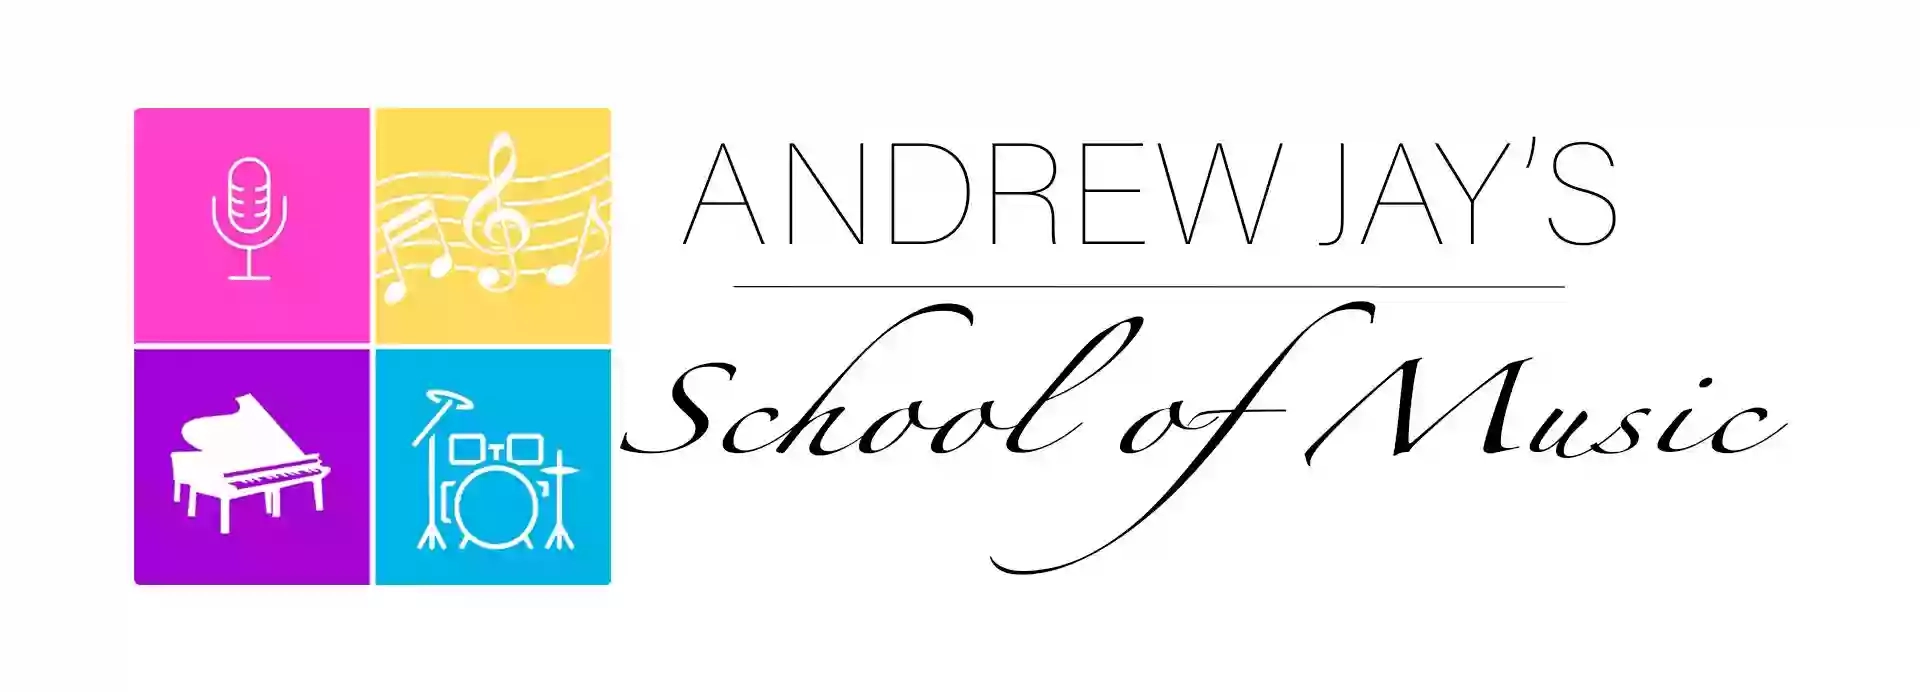 Andrew Jay's - School of Music